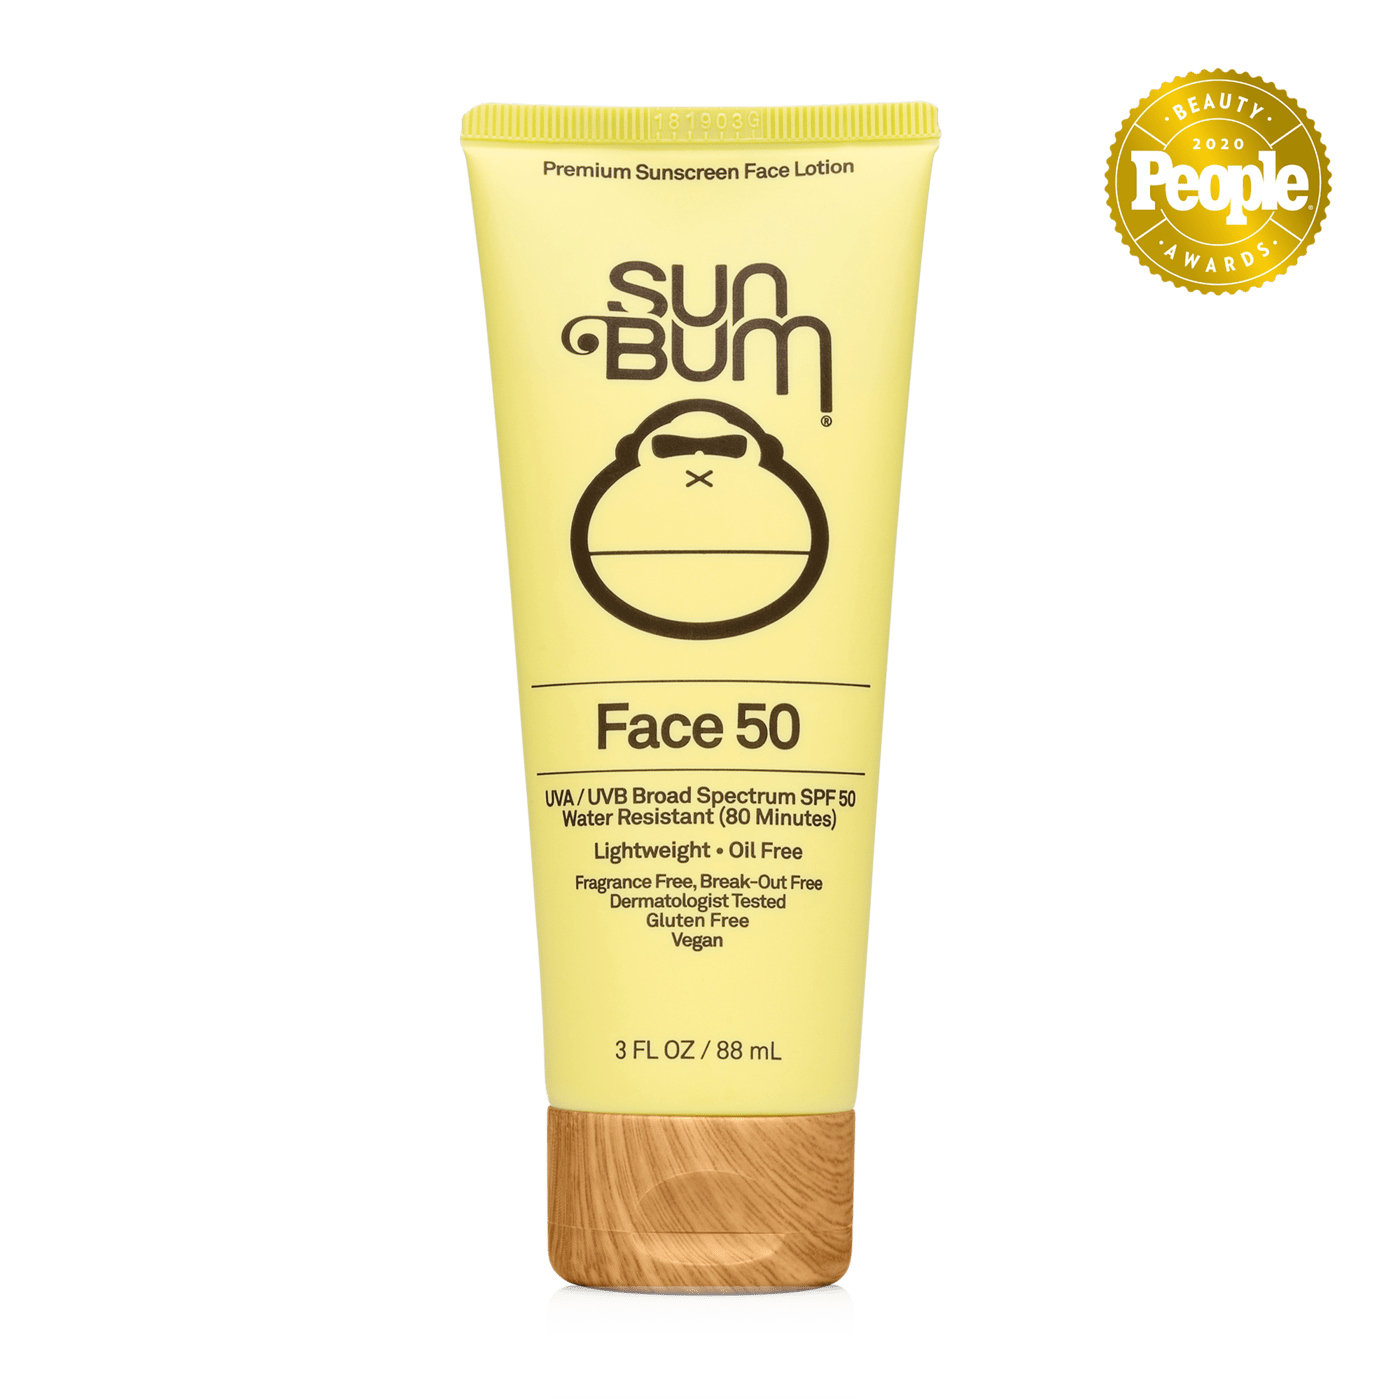 Sun Bum sunscreen Sun Bum Face 50 Sunscreen Lotion SPF 50